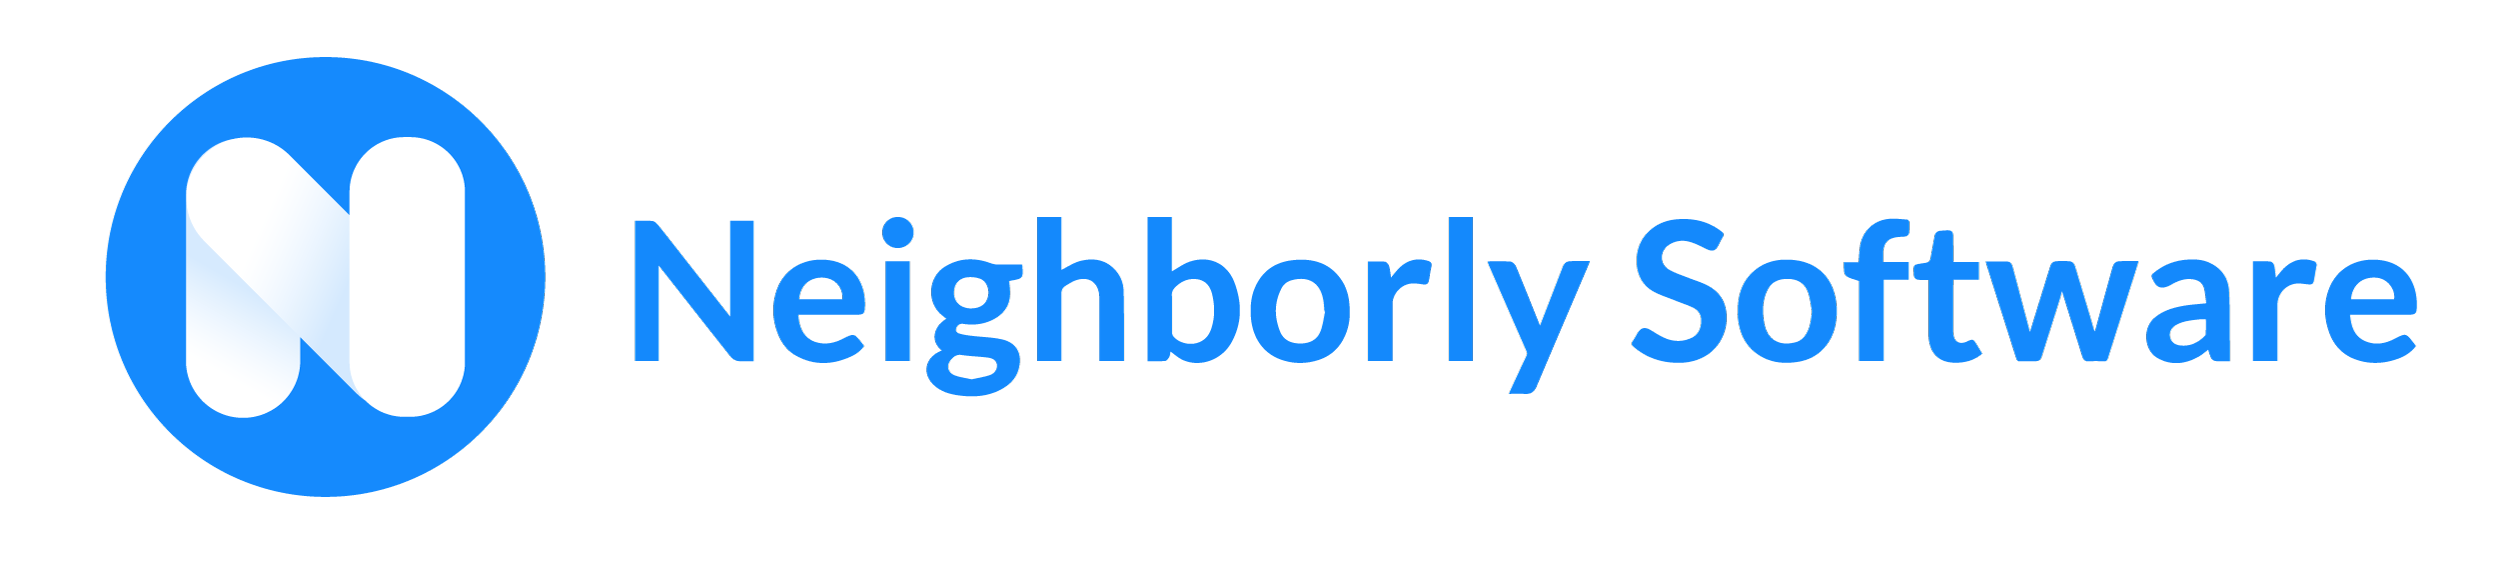 blog.neighborlysoftware.com